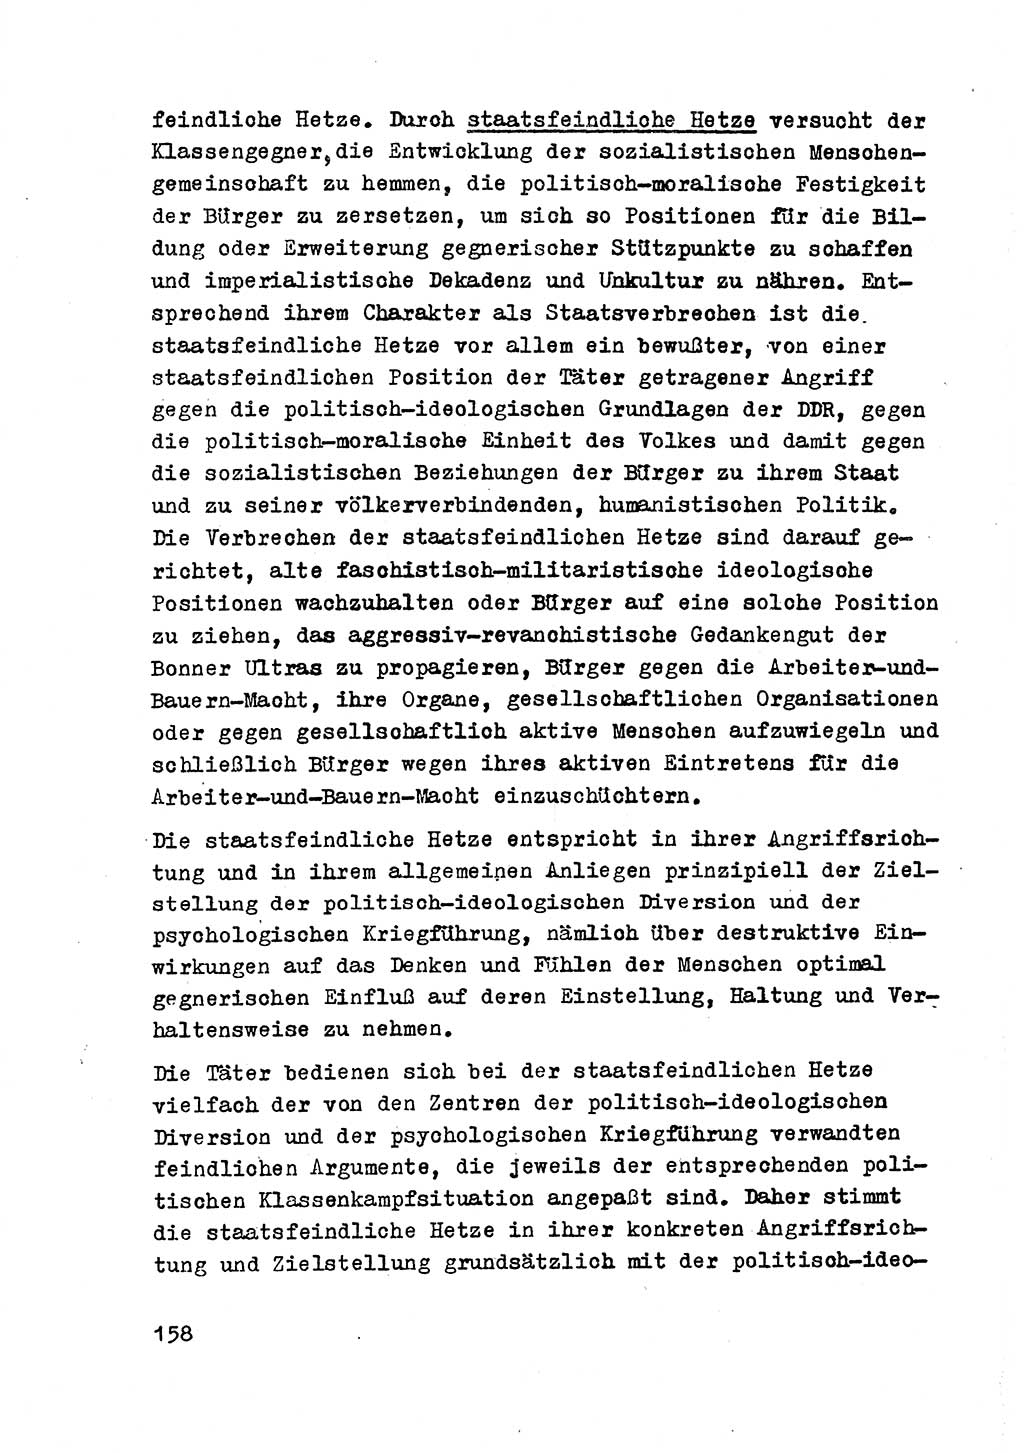 Strafrecht der DDR (Deutsche Demokratische Republik), Besonderer Teil, Lehrmaterial, Heft 2 1969, Seite 158 (Strafr. DDR BT Lehrmat. H. 2 1969, S. 158)